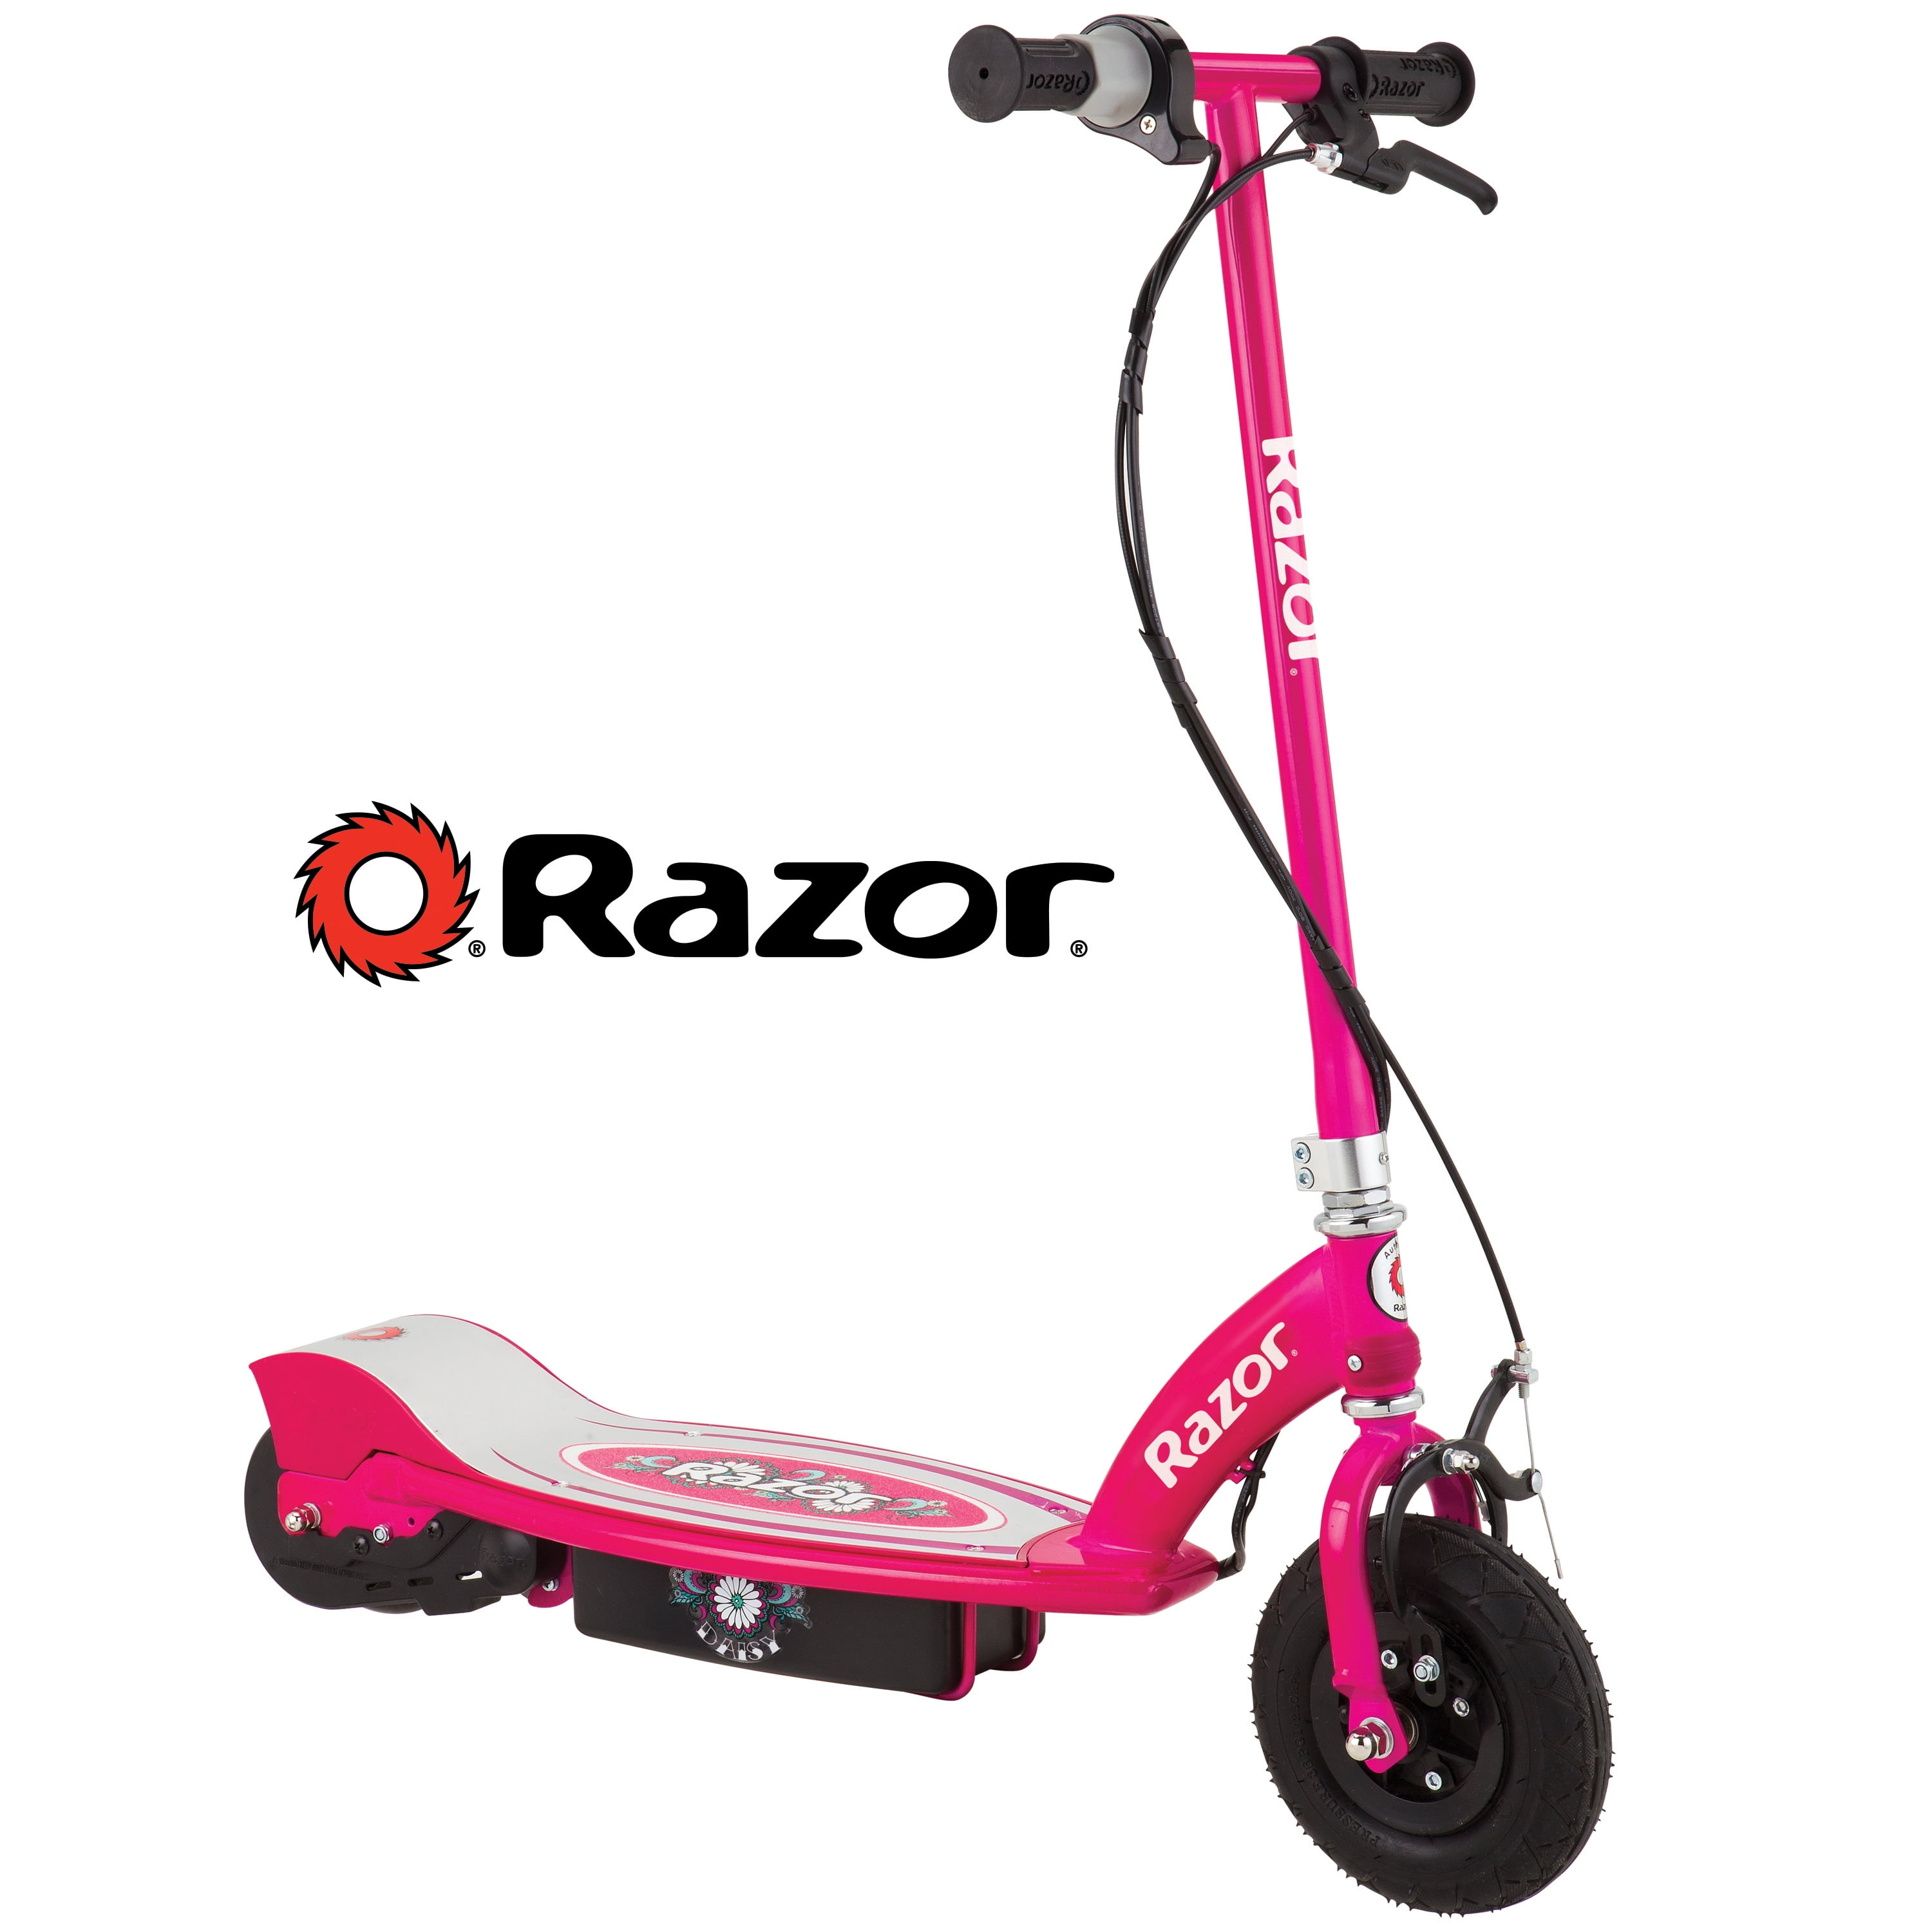 Razor E200 High Torque Electric-Powered Scooter - Teal - Walmart.com